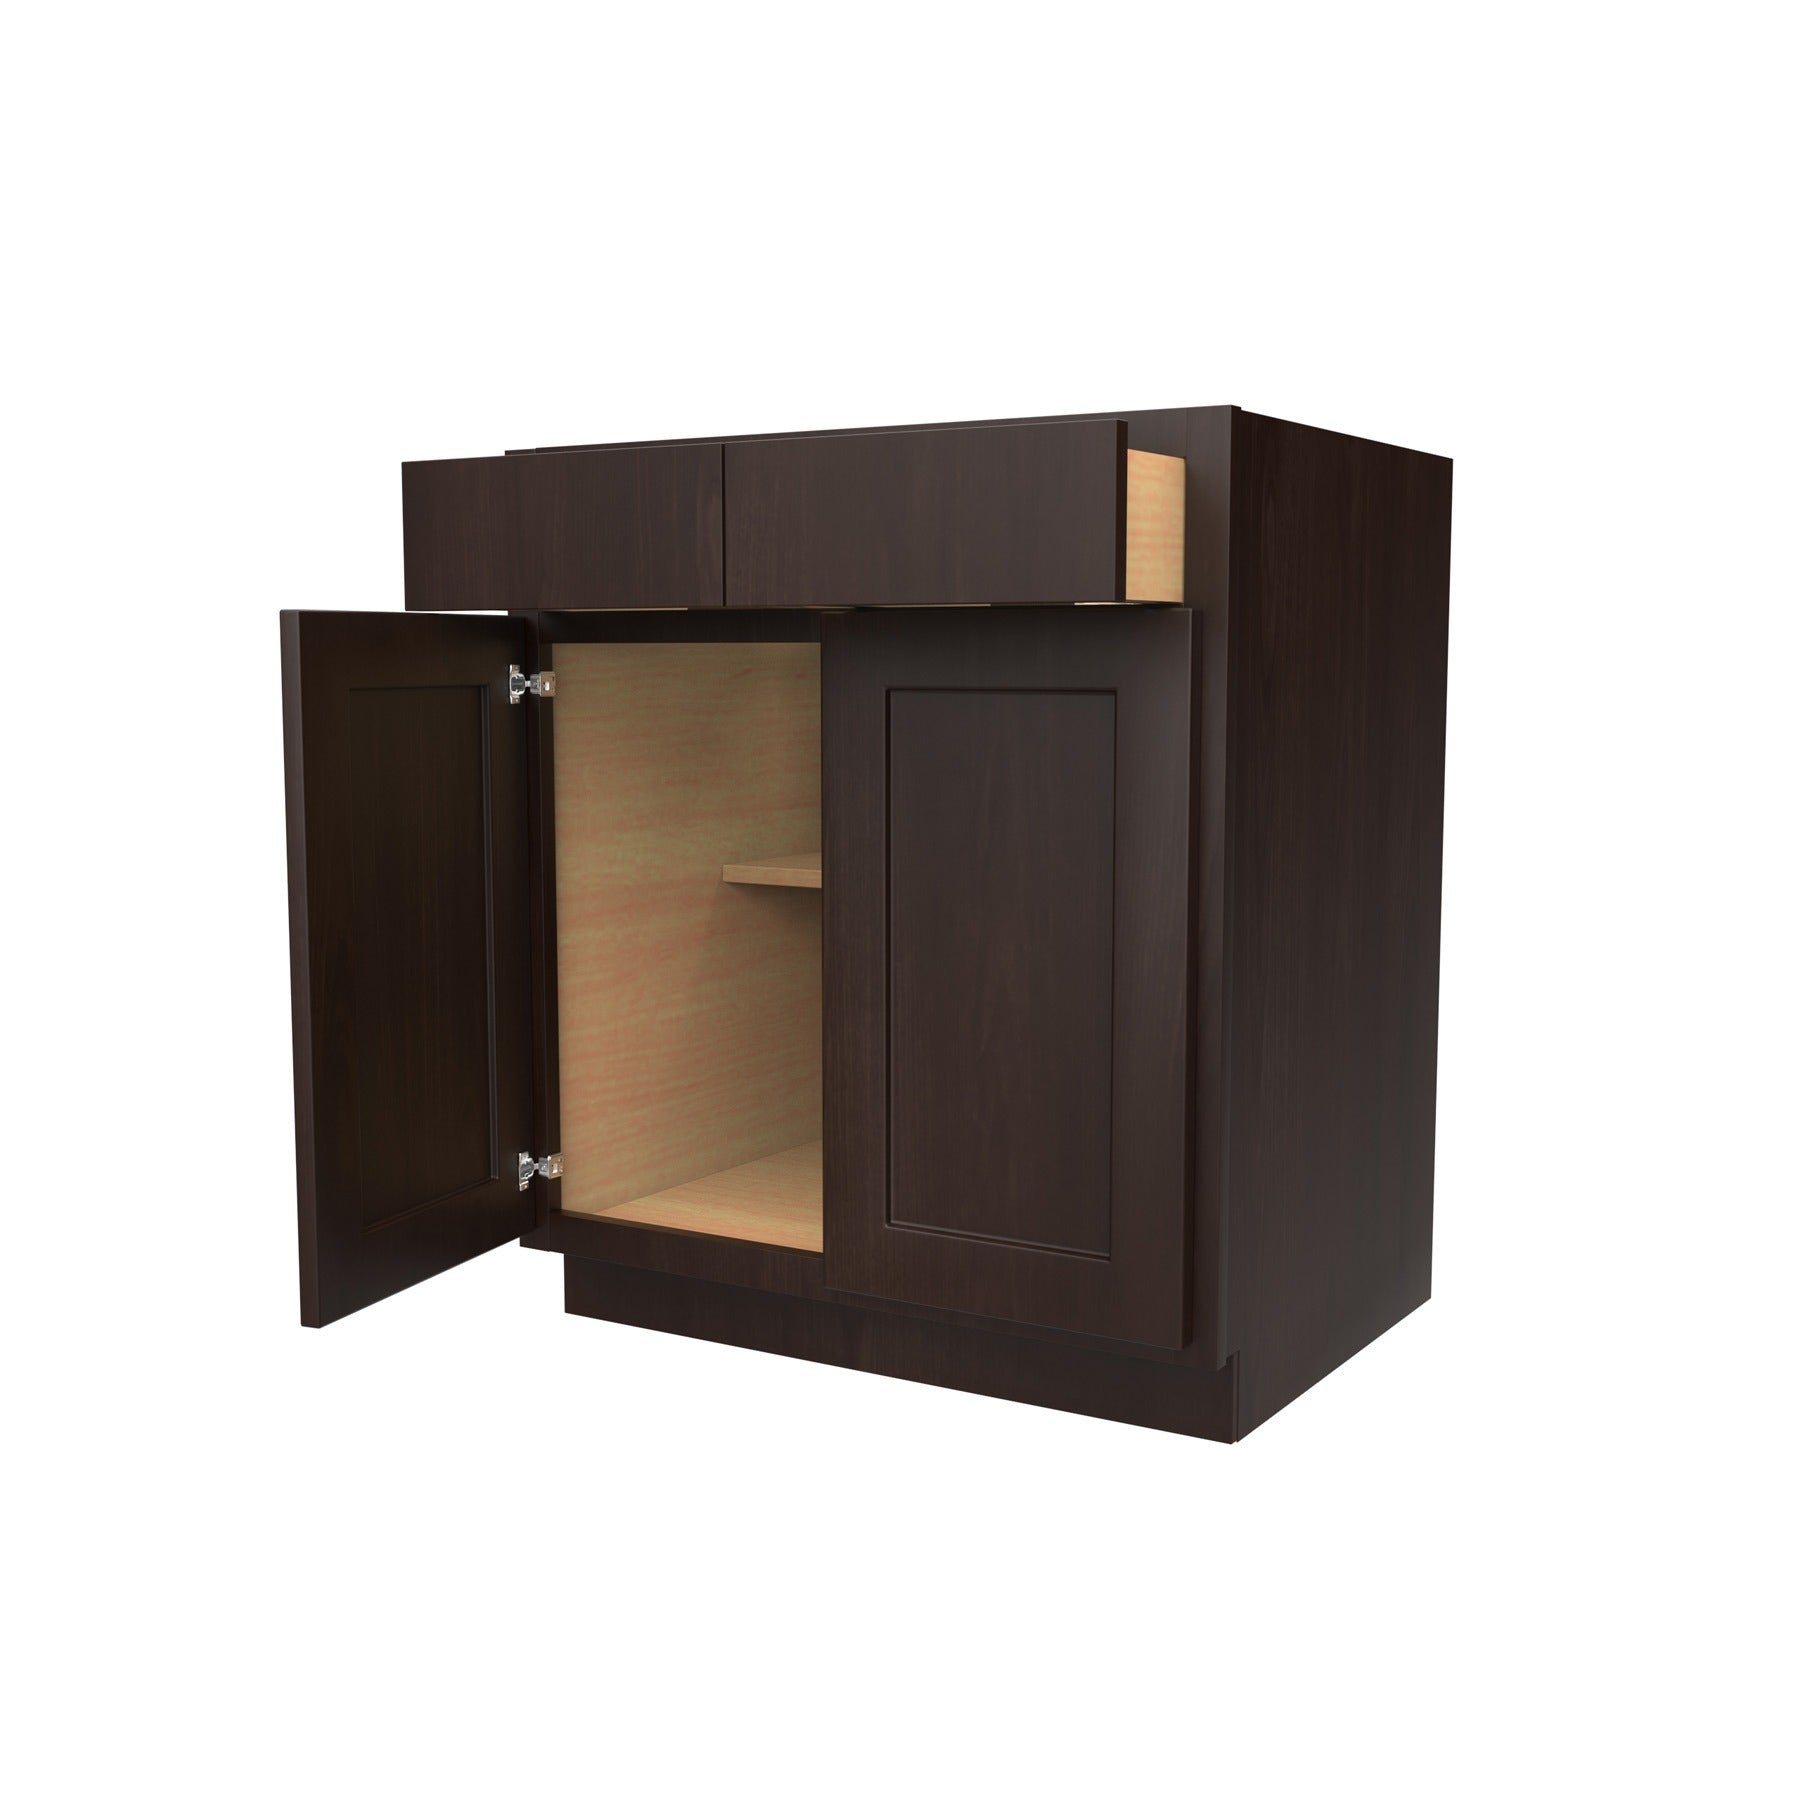 Luxor Espresso - Double Door Base Cabinet | 30"W x 34.5"H x 24"D